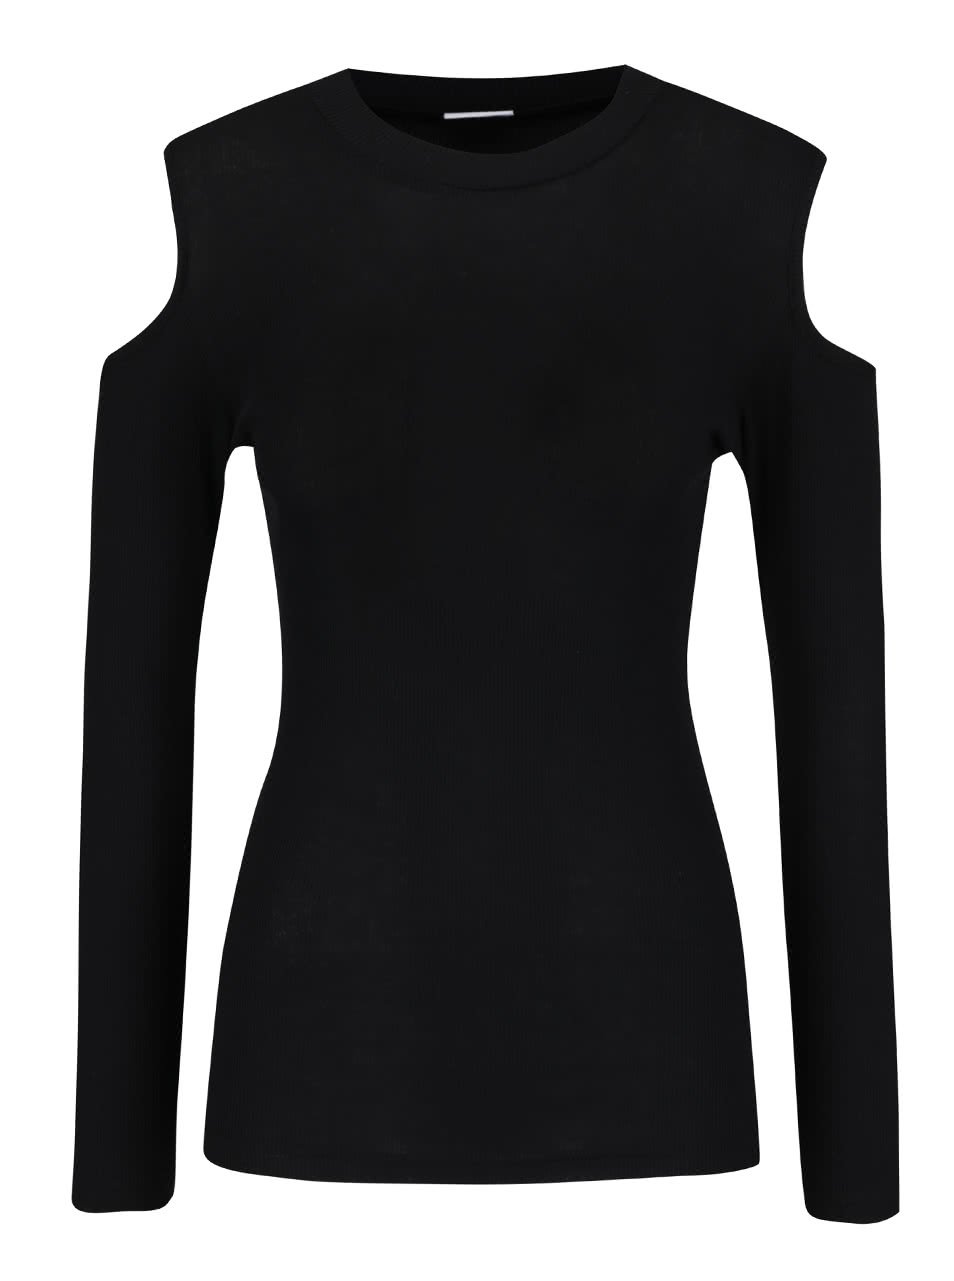 Černé žebrované tričko s průstřihy na ramenou Jacqueline de Yong Sierra